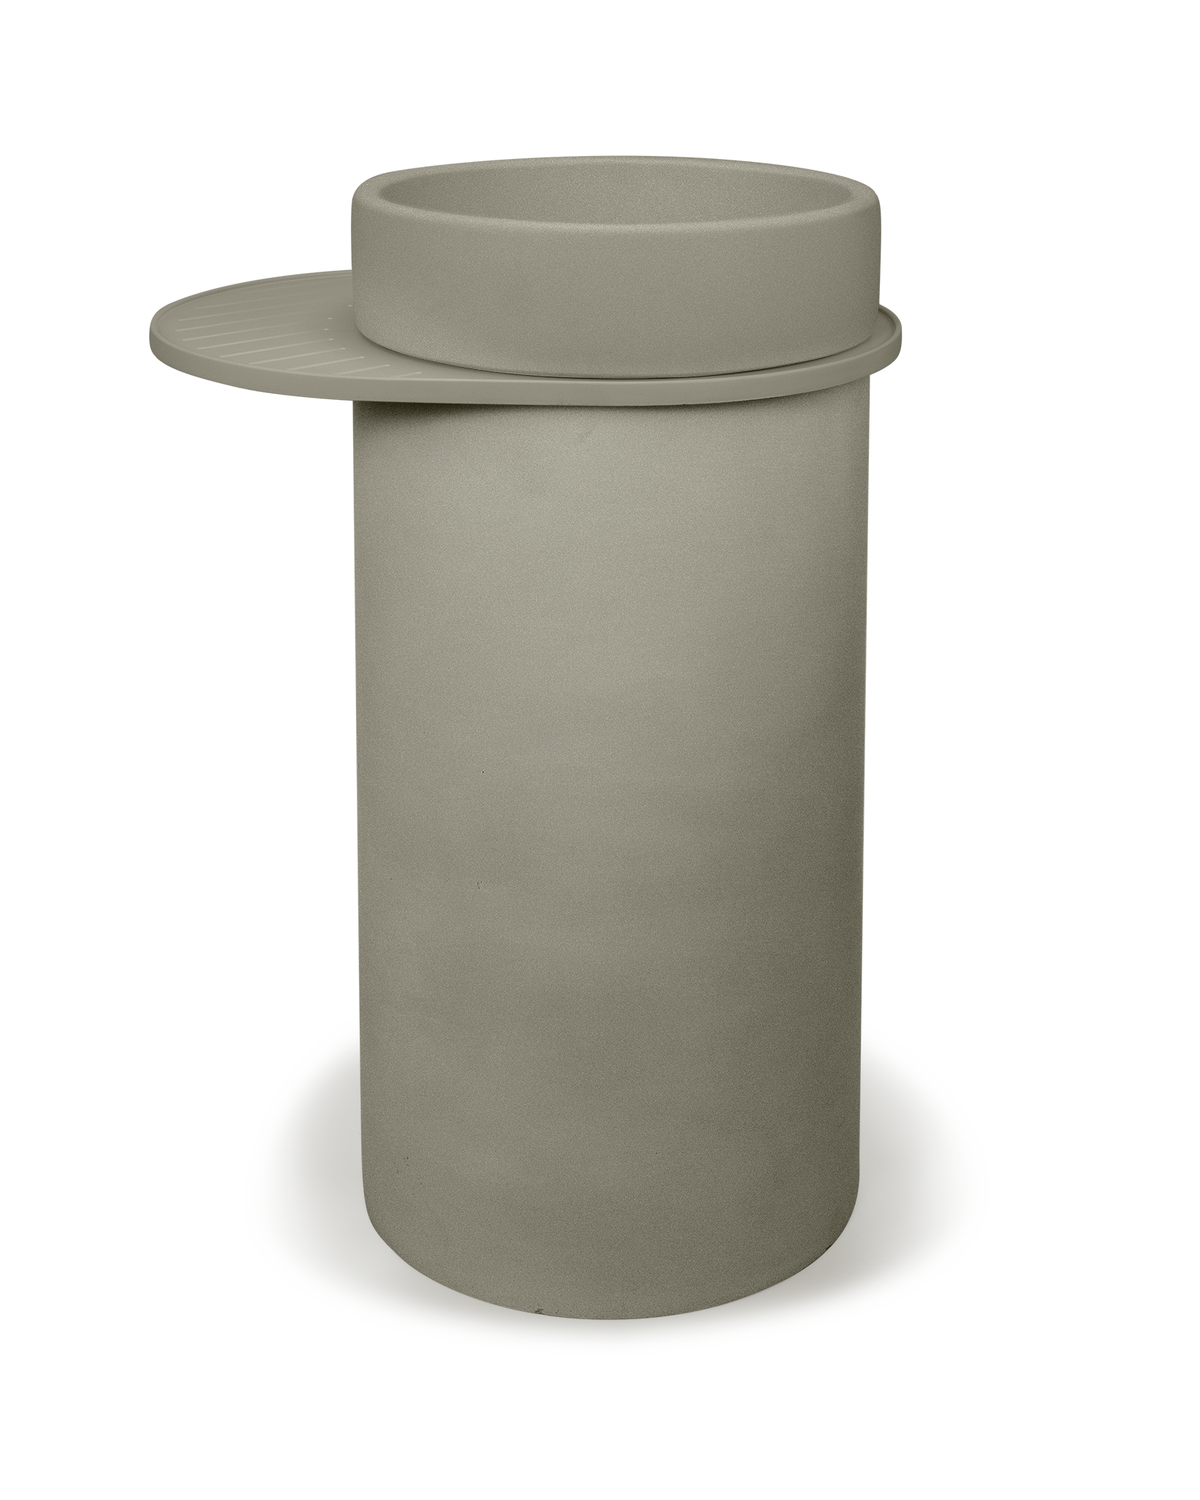 Cylinder - Bowl Basin (Olive)